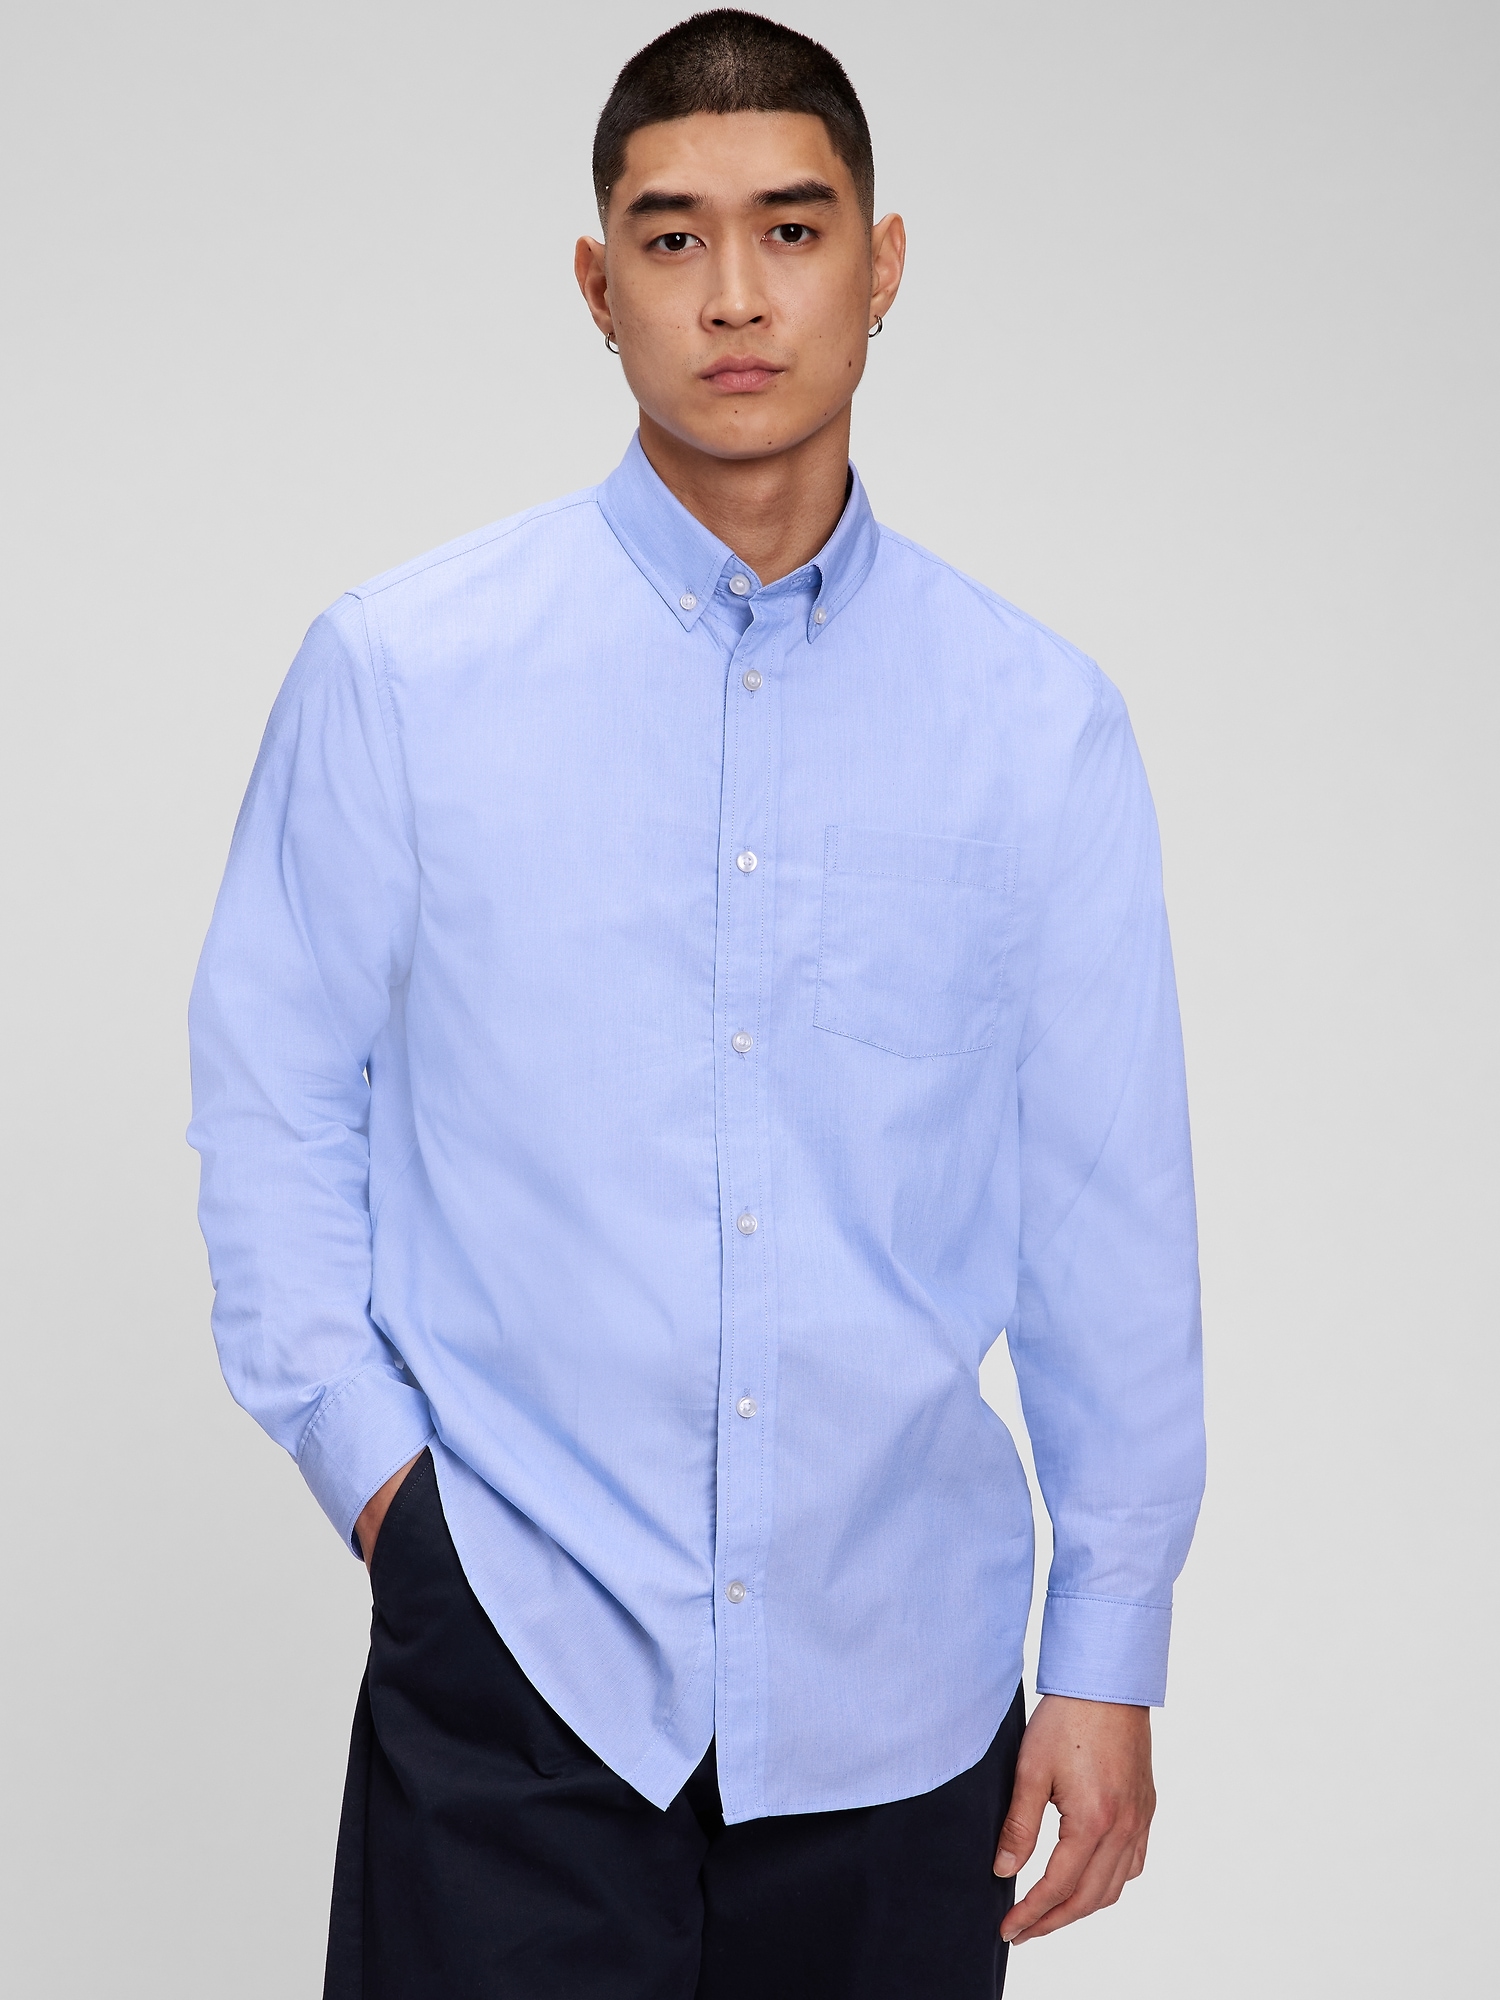 Gap All-day Poplin Shirt In Standard Fit In Light Blue